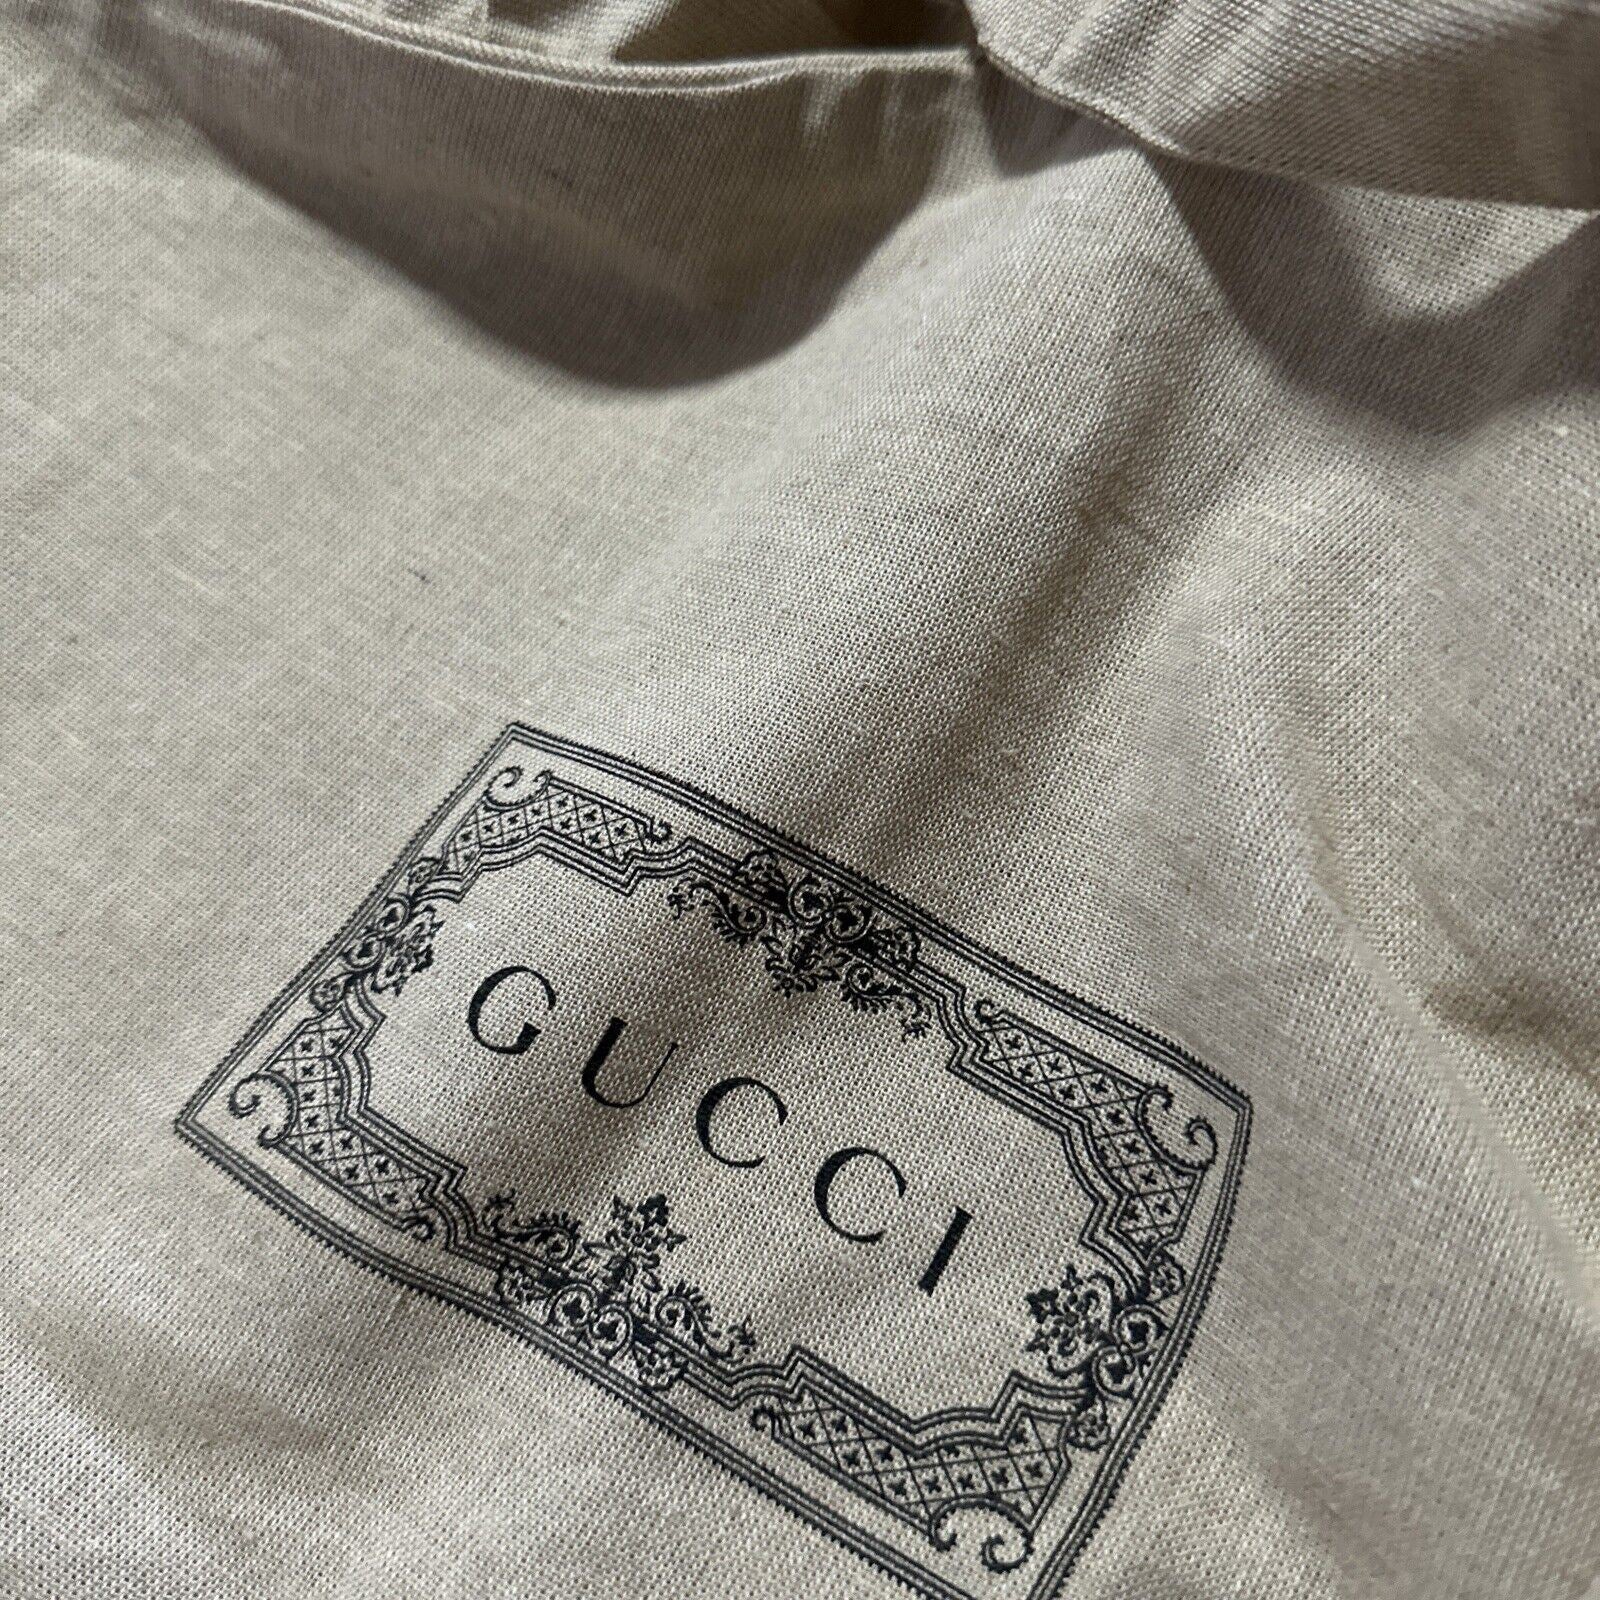 Совершенно новый костюм для одежды Gucci, любая одежда унисекс LT коричневая сумка